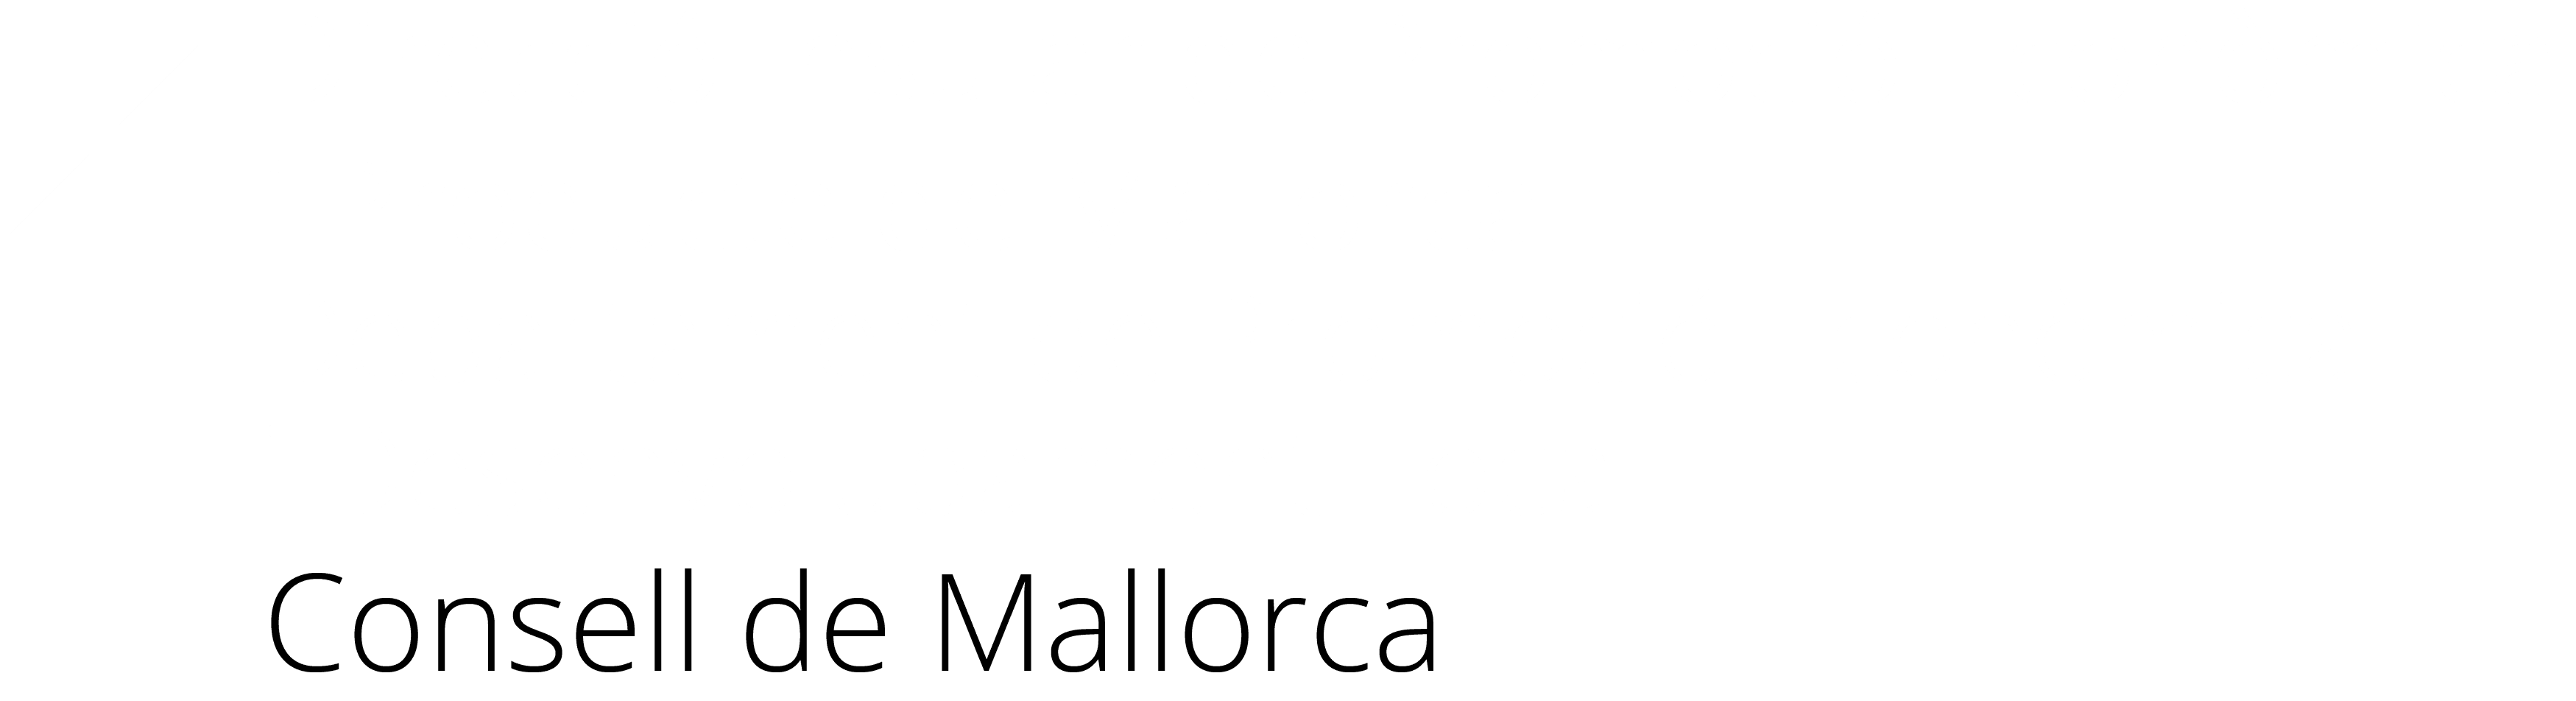 DI Promoció Econòmica i Producte de Mallorca Blanc2